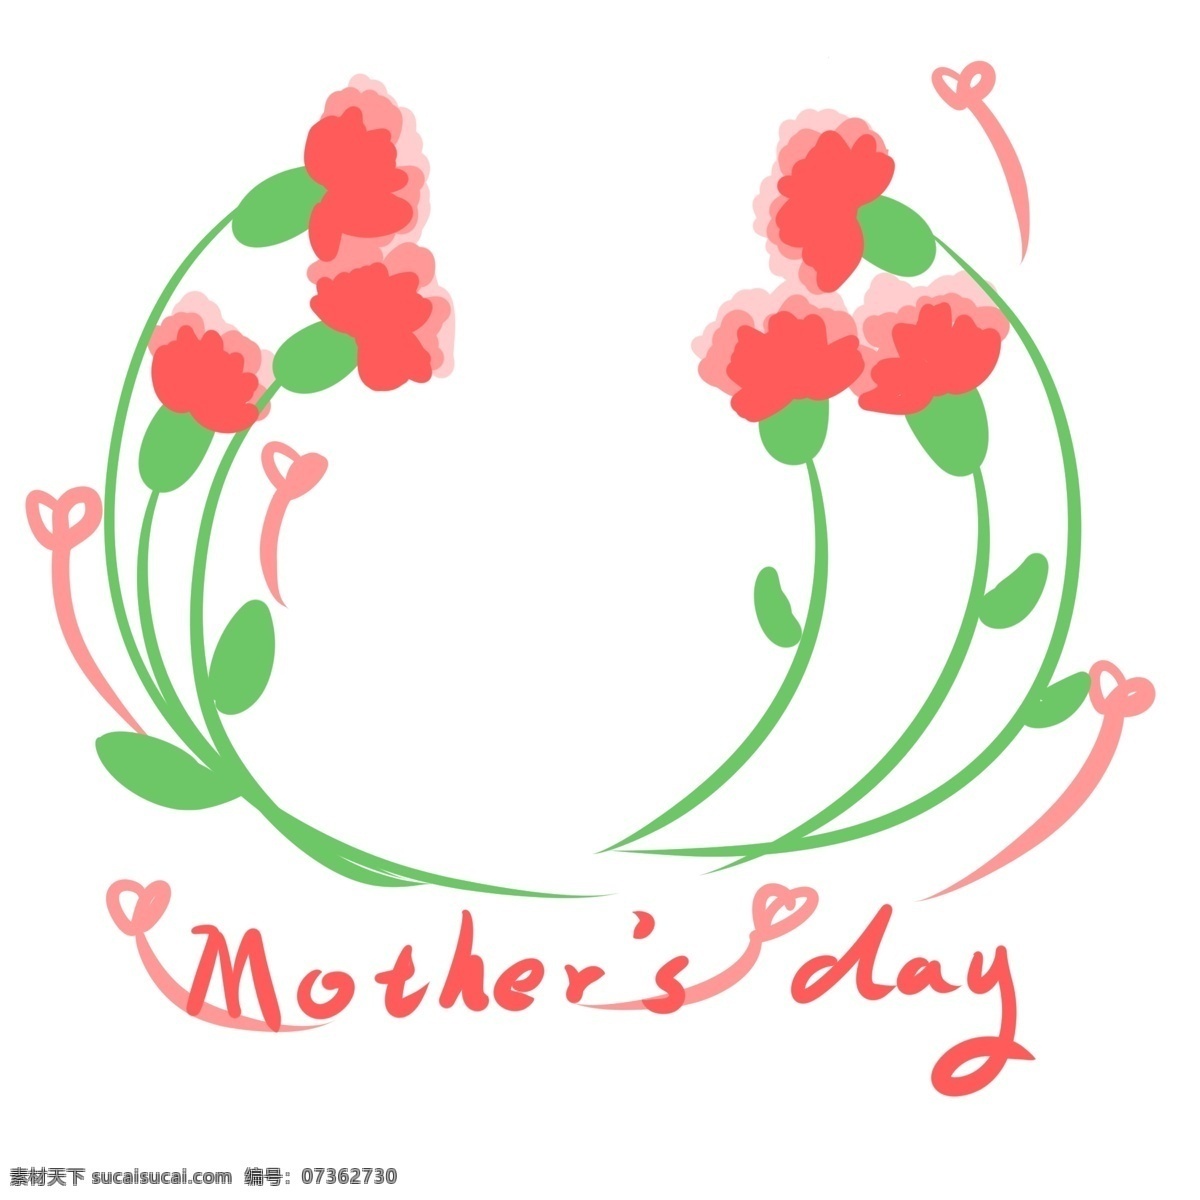 妈妈 节日 快乐 花朵 边框 花朵边框 母亲节边框 粉色 康乃馨 创意 卡通手绘 边框纹理 爱心 可爱